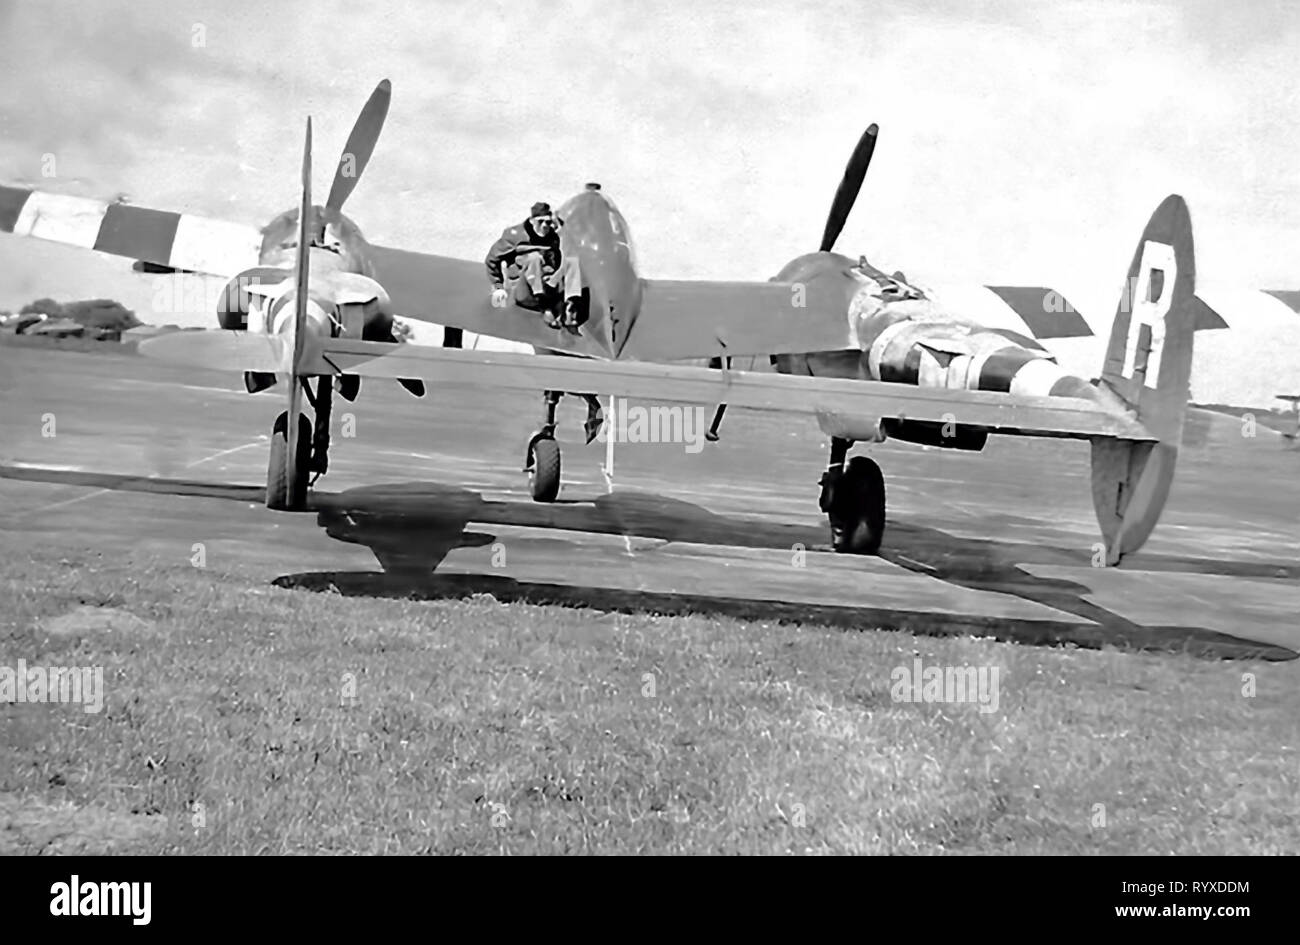 Persönliche Fotos und Erinnerungsstücke, die der Bekämpfung der Amerikaner während des Zweiten Weltkriegs. P-38 Lightning Fighter fliegendes Personal. Stockfoto